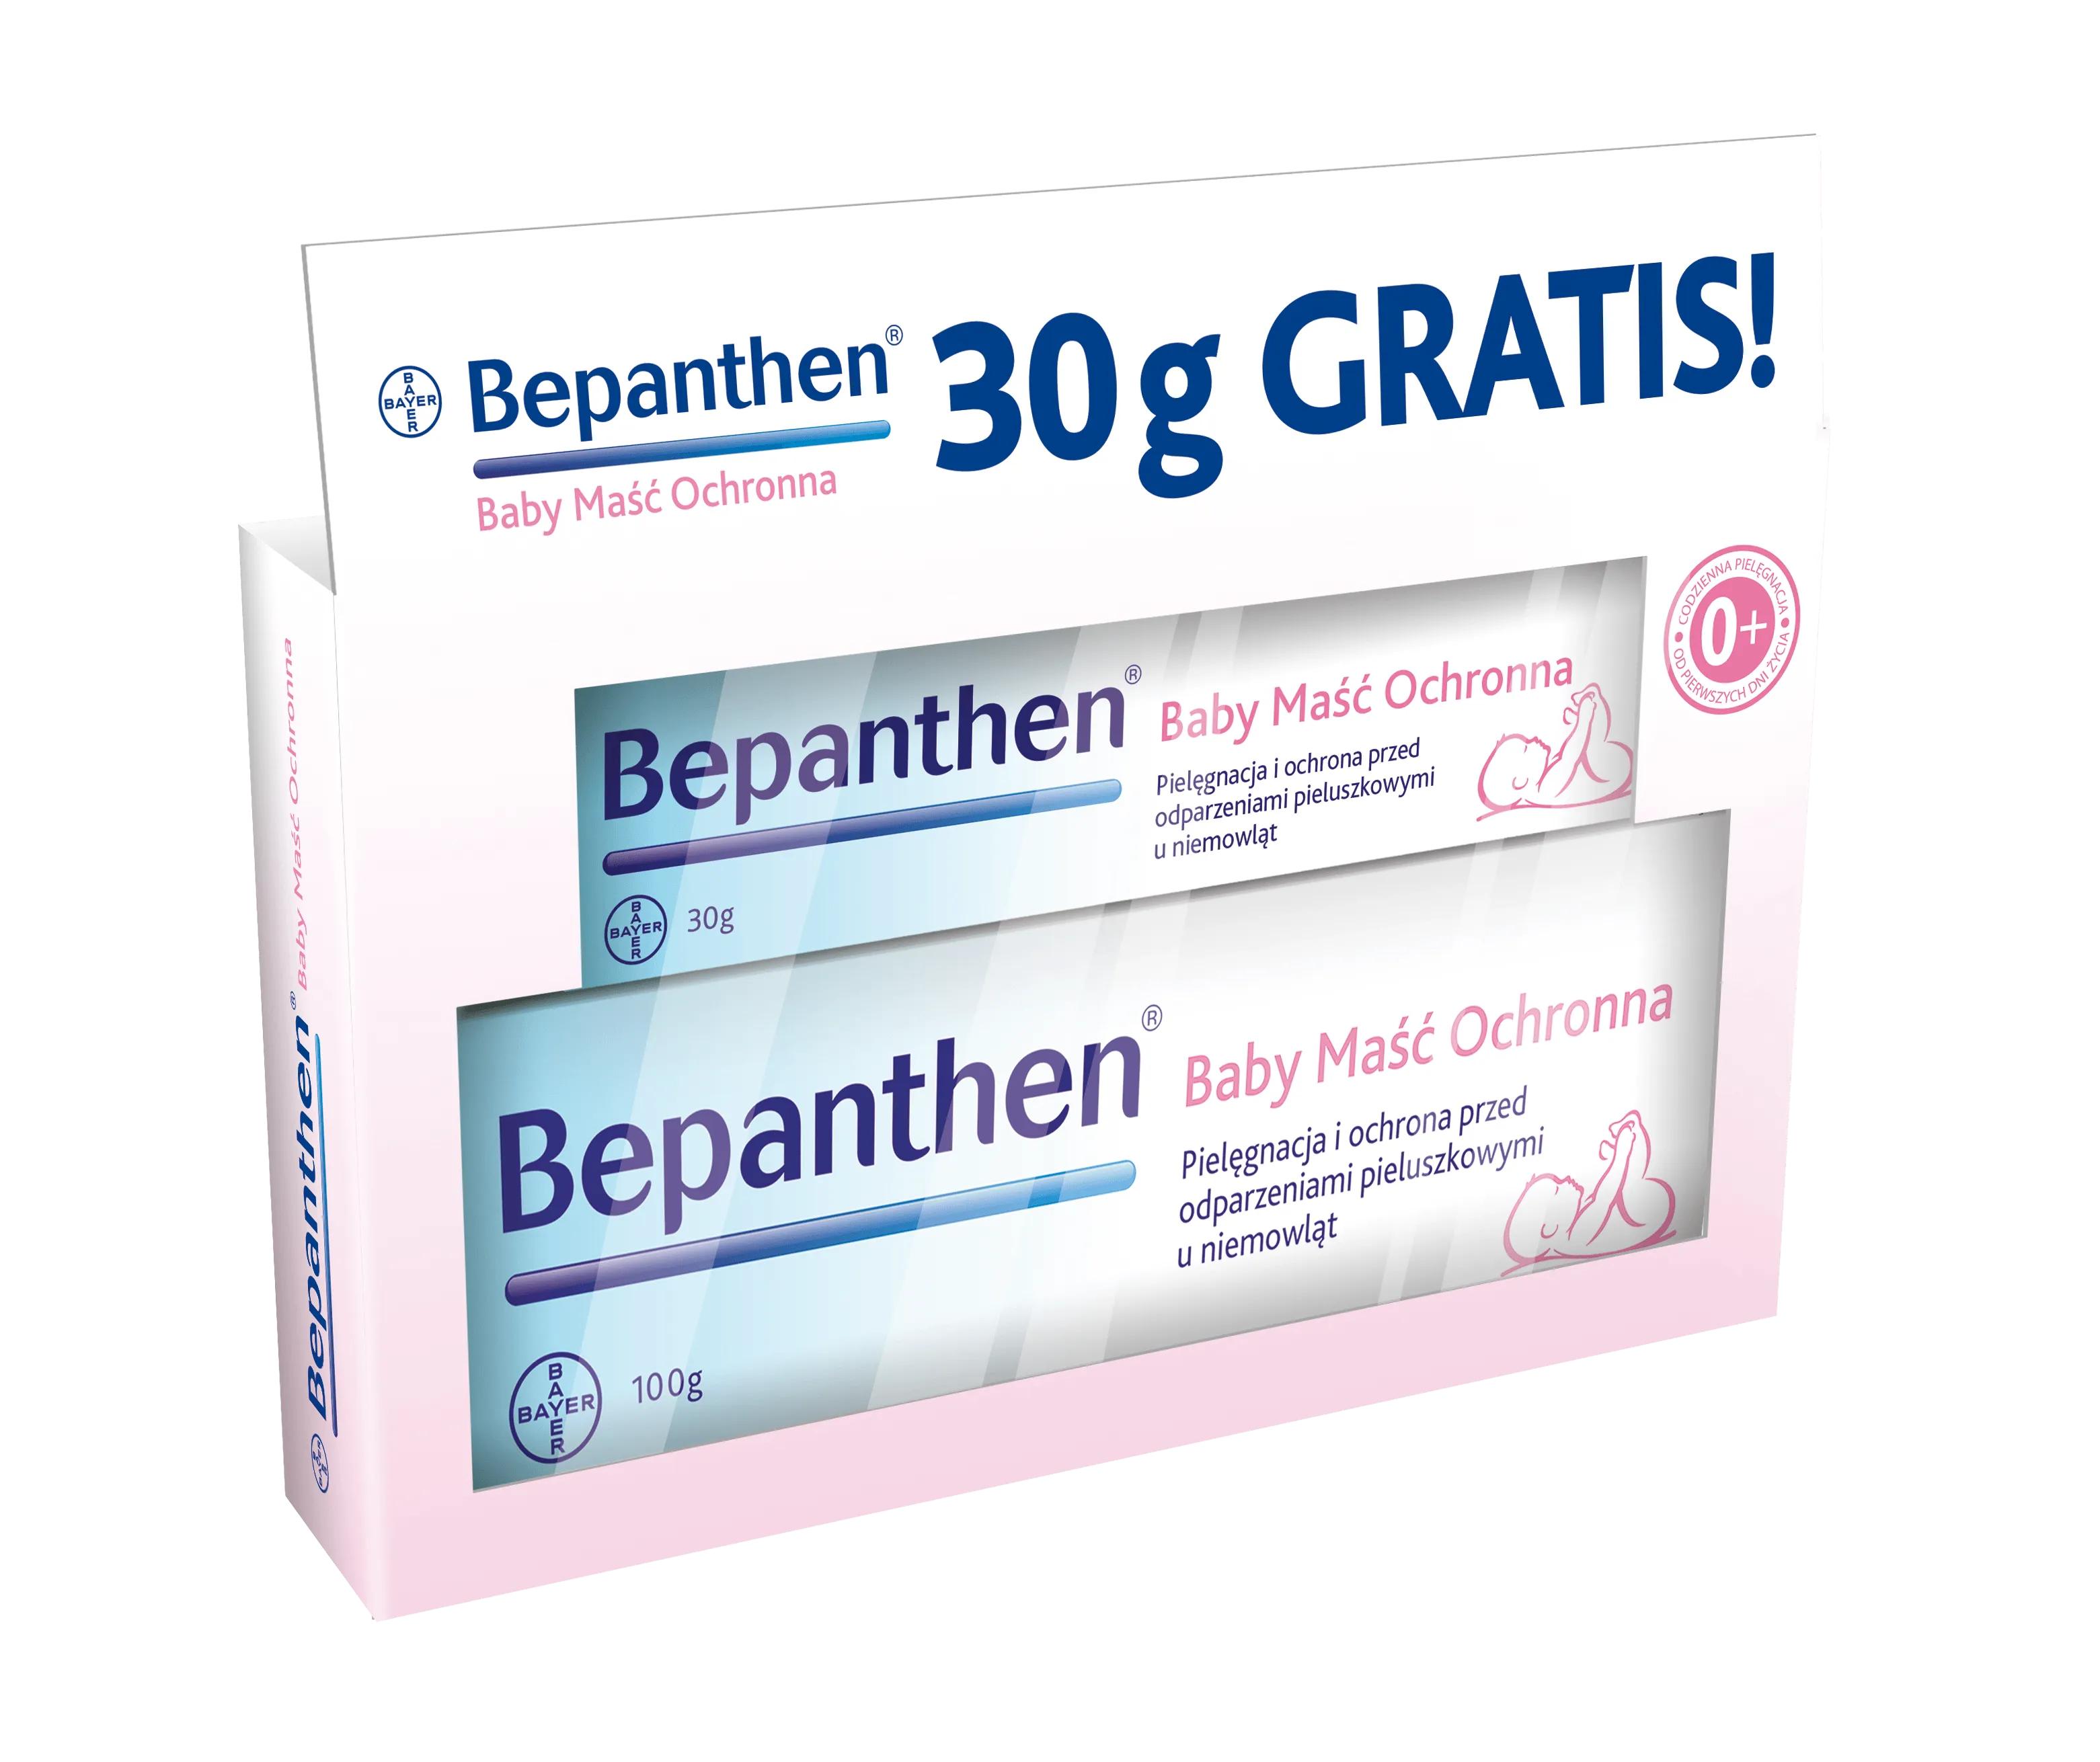 Bepanthen Baby Maść Ochronna, zestaw promocyjny, 100 g + 30 g gratis